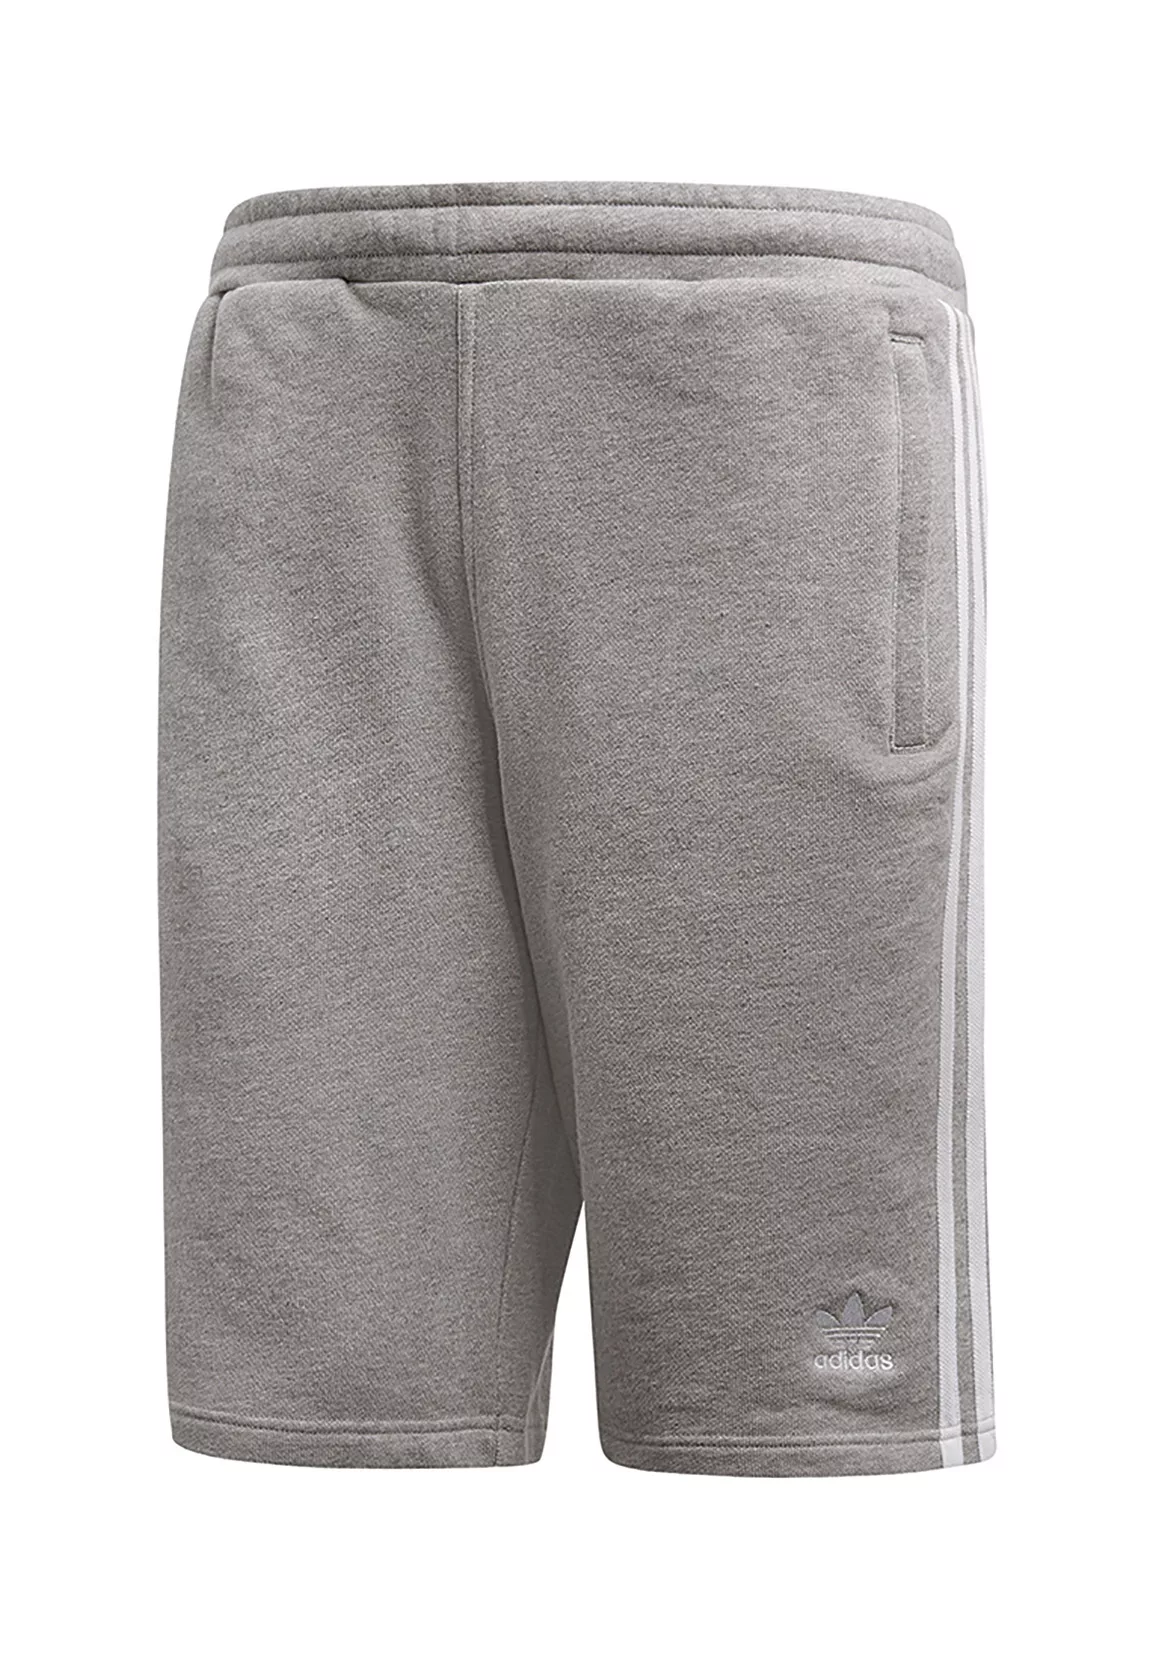 adidas Originals – adicolor – Shorts mit den drei Steifen in Grau günstig online kaufen